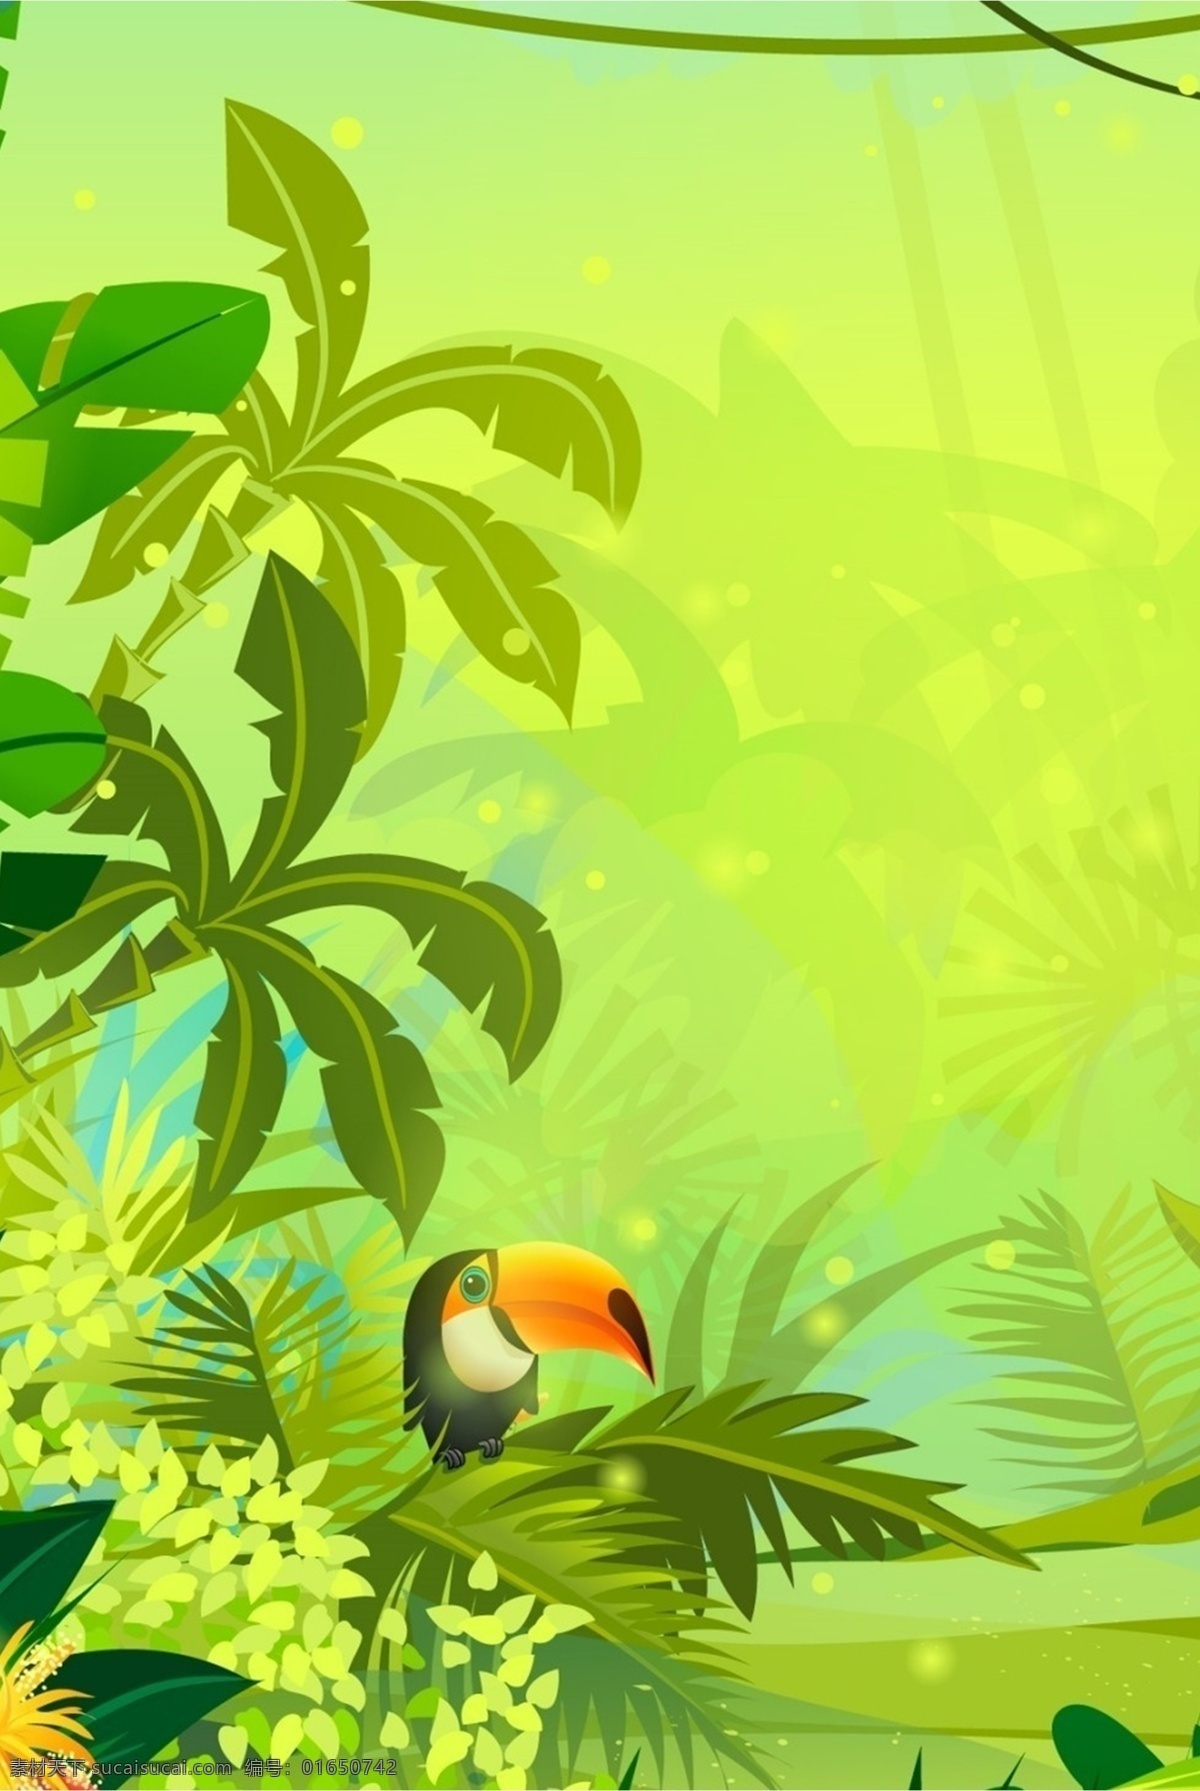 热带雨林 啄木鸟 植物 背景 树叶 绿色植物 雨林 鸟 空气清新 叶子 绿色生活